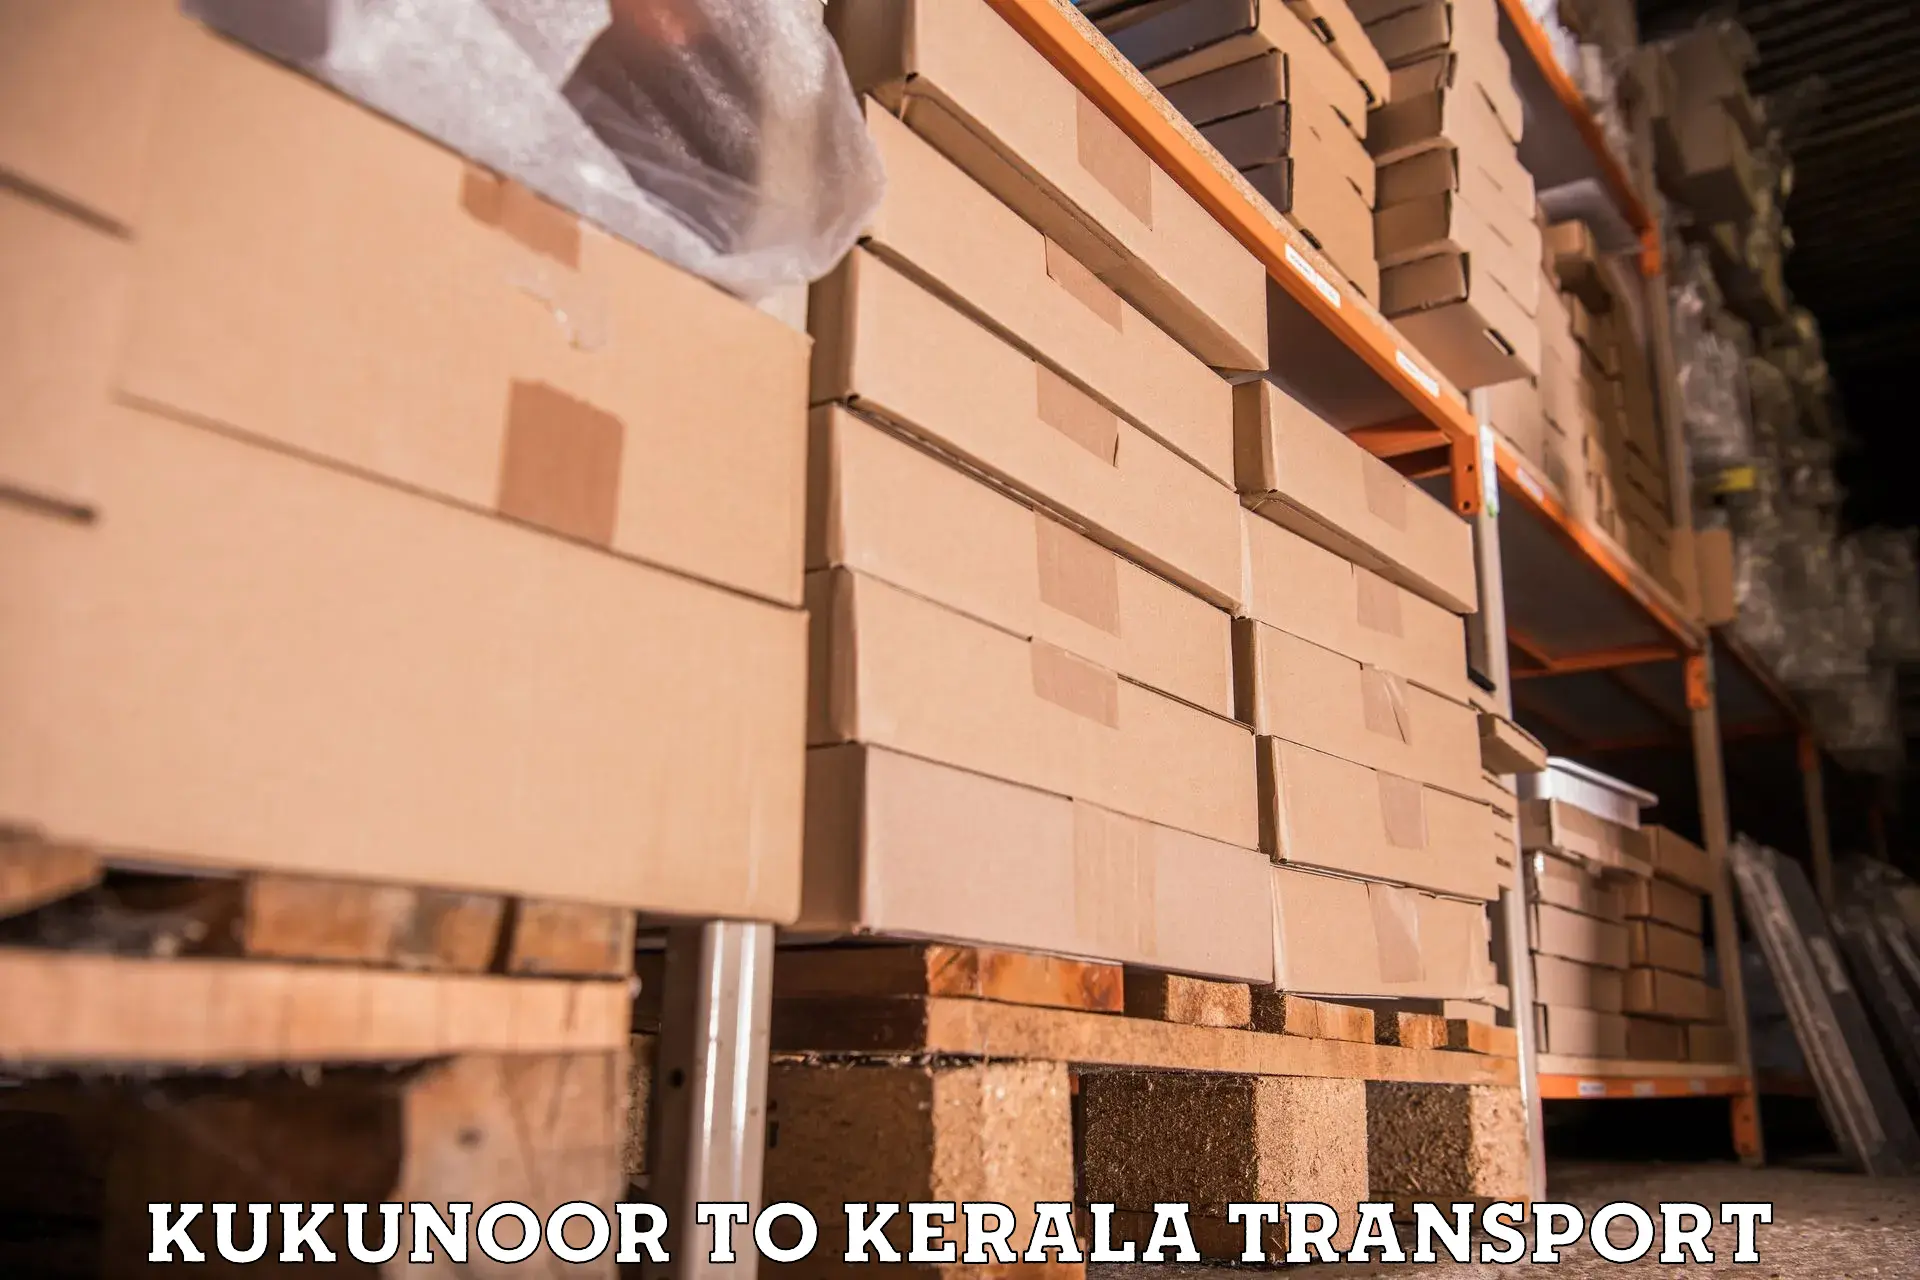 Cargo transport services Kukunoor to Kerala